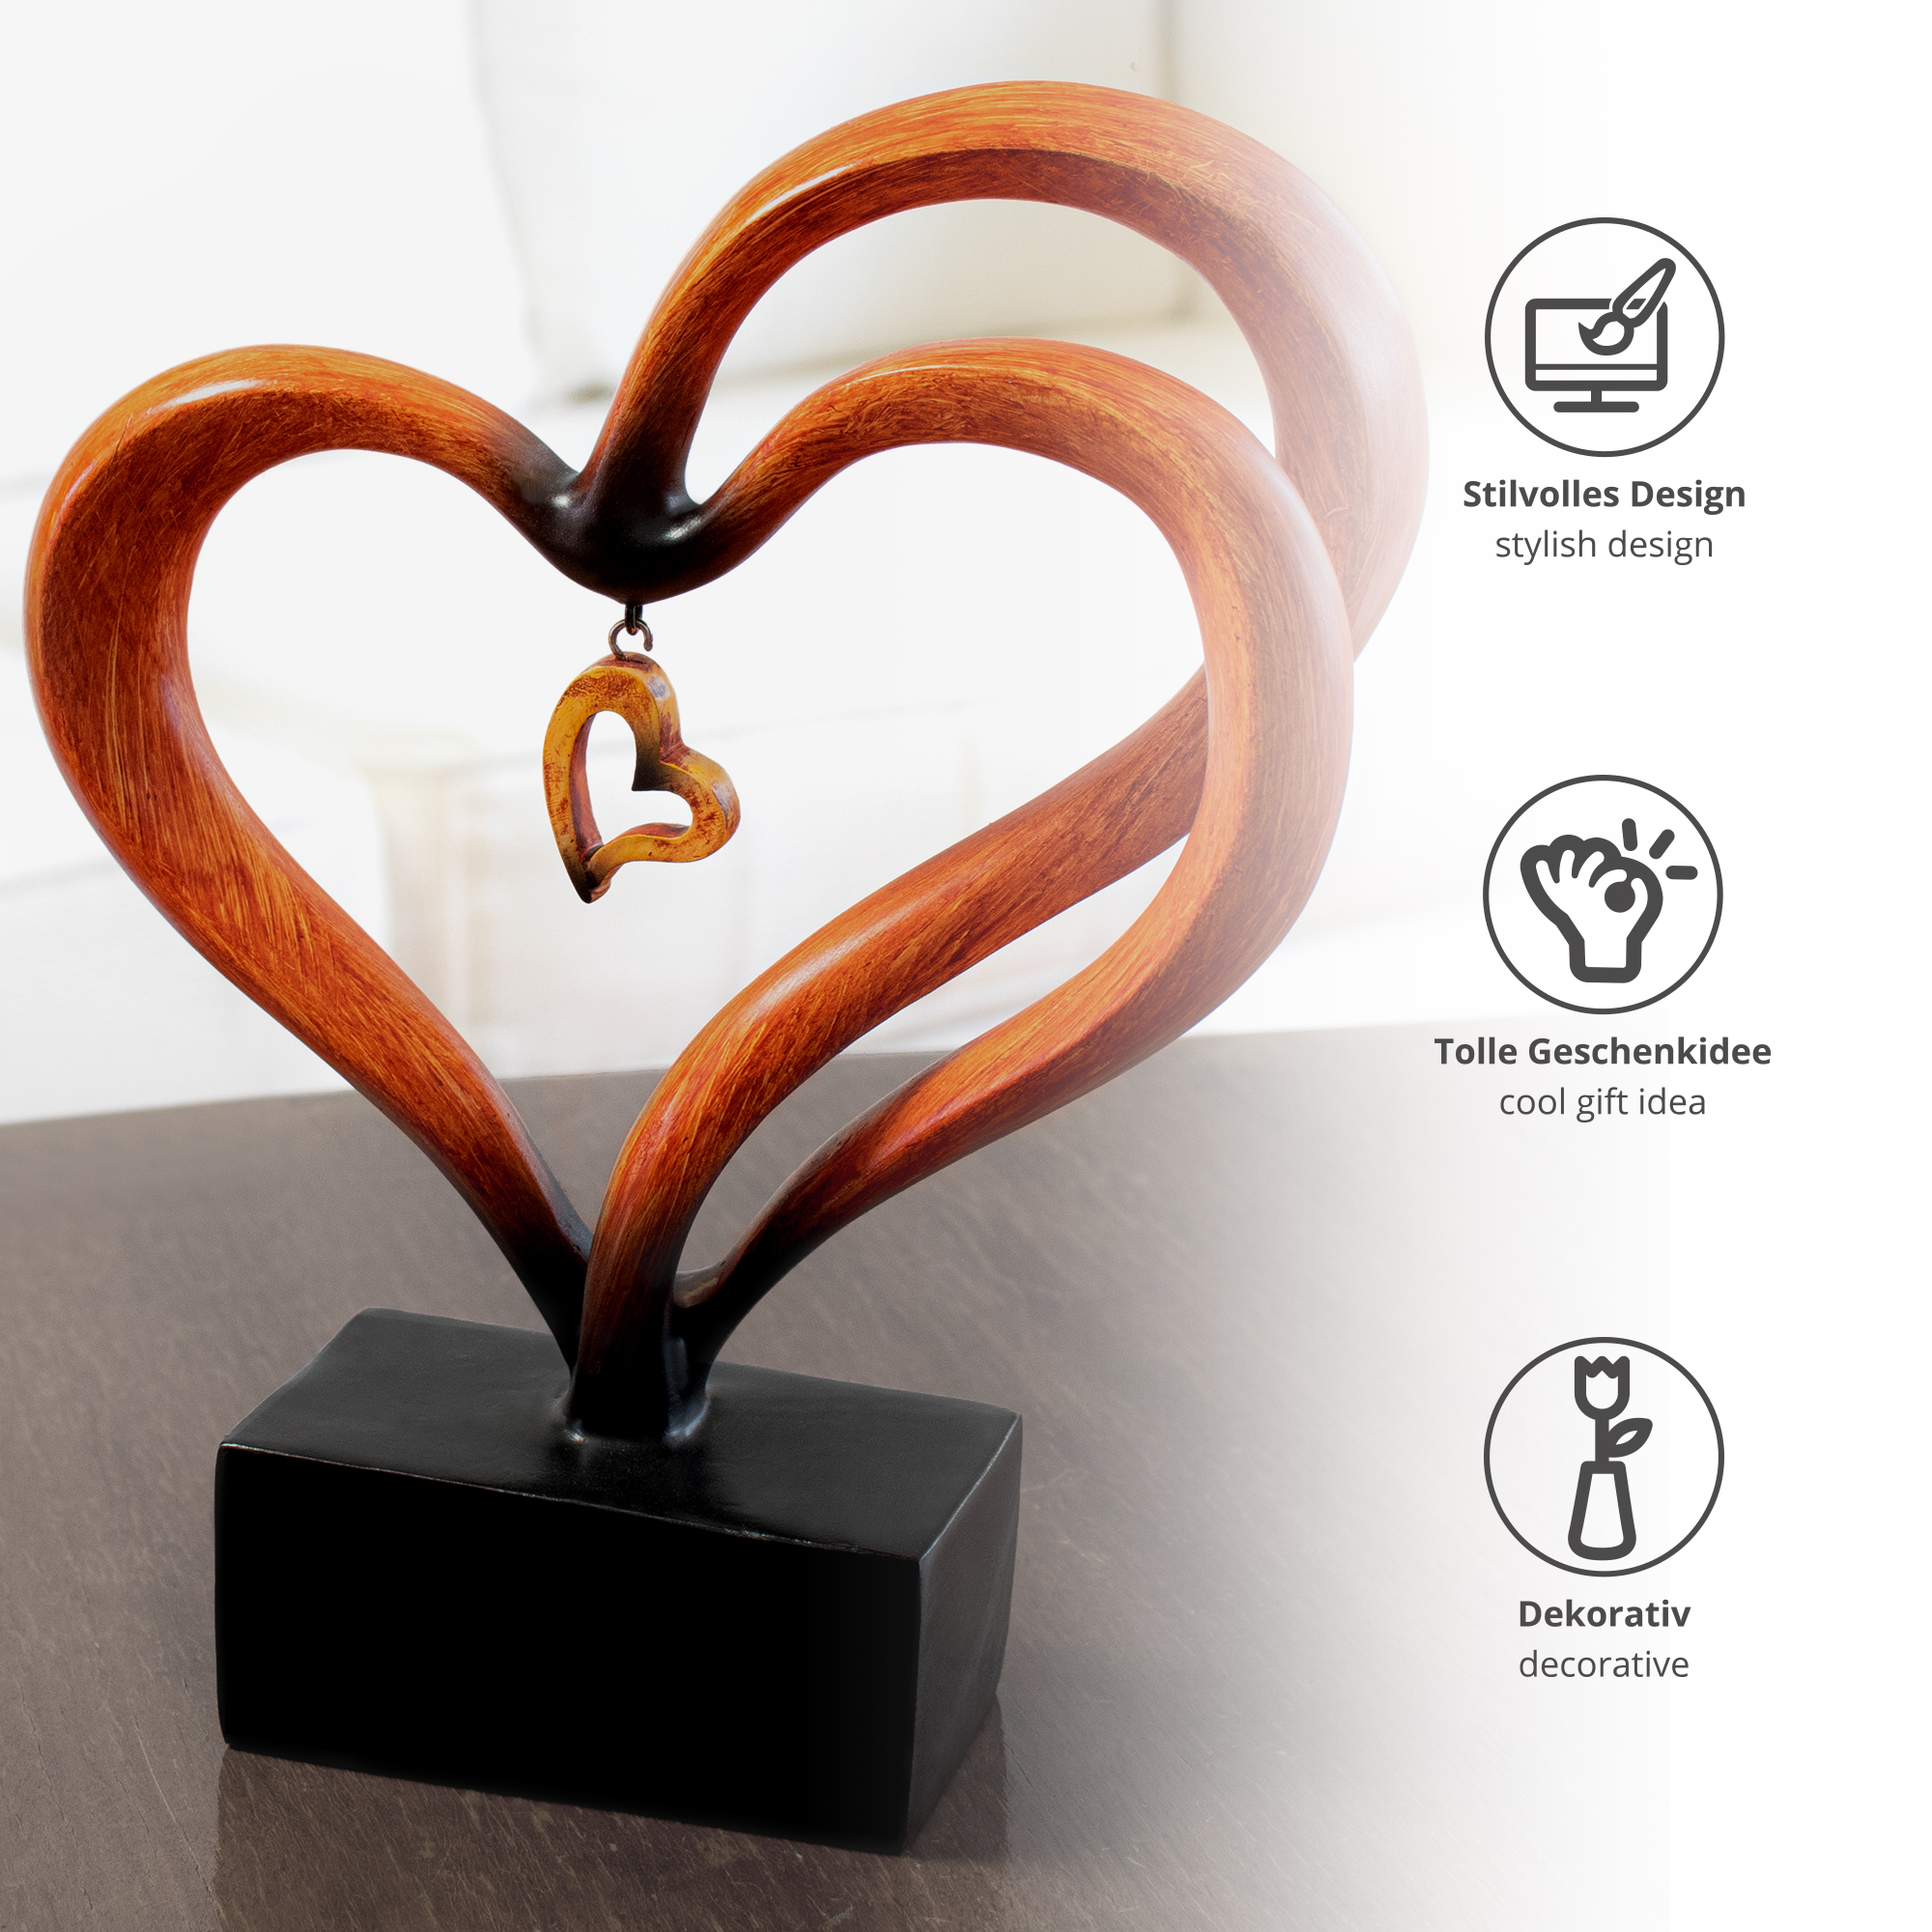 Design Skulptur - Holz-Herz mit Anhängern 0021-0008-EU-0000 - 3